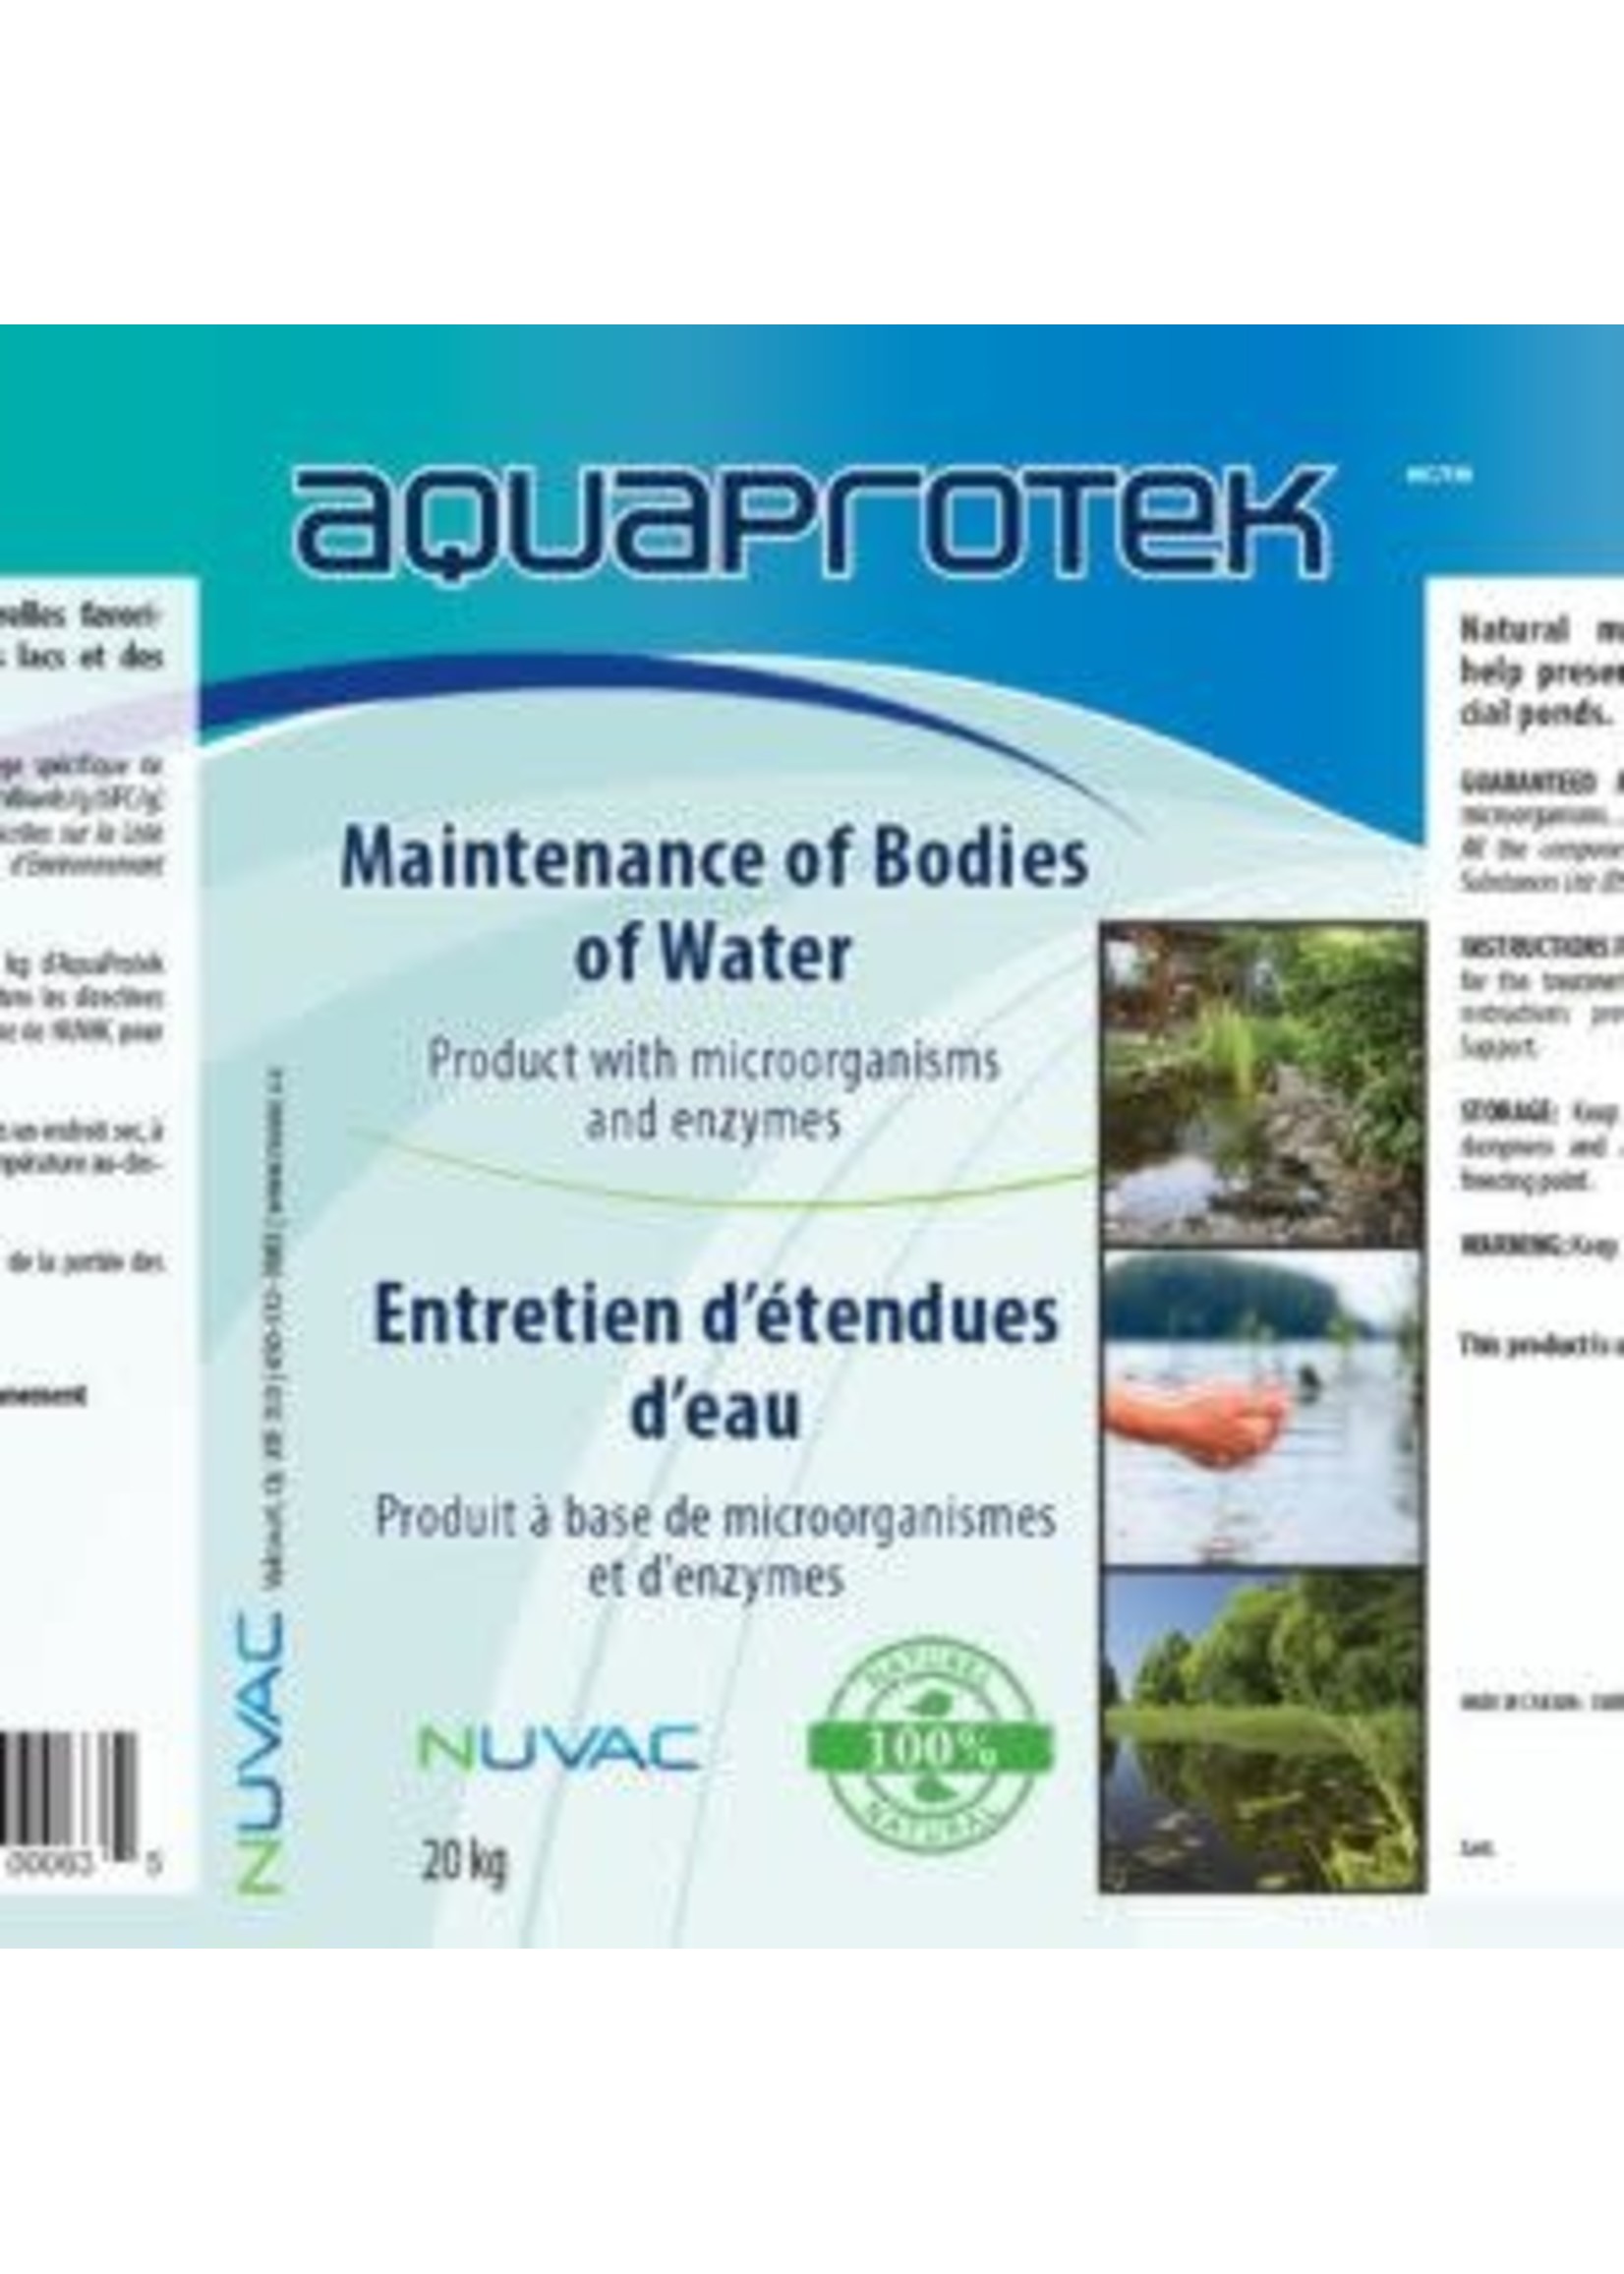 Nuvac Aquaproteck 28 g X 6